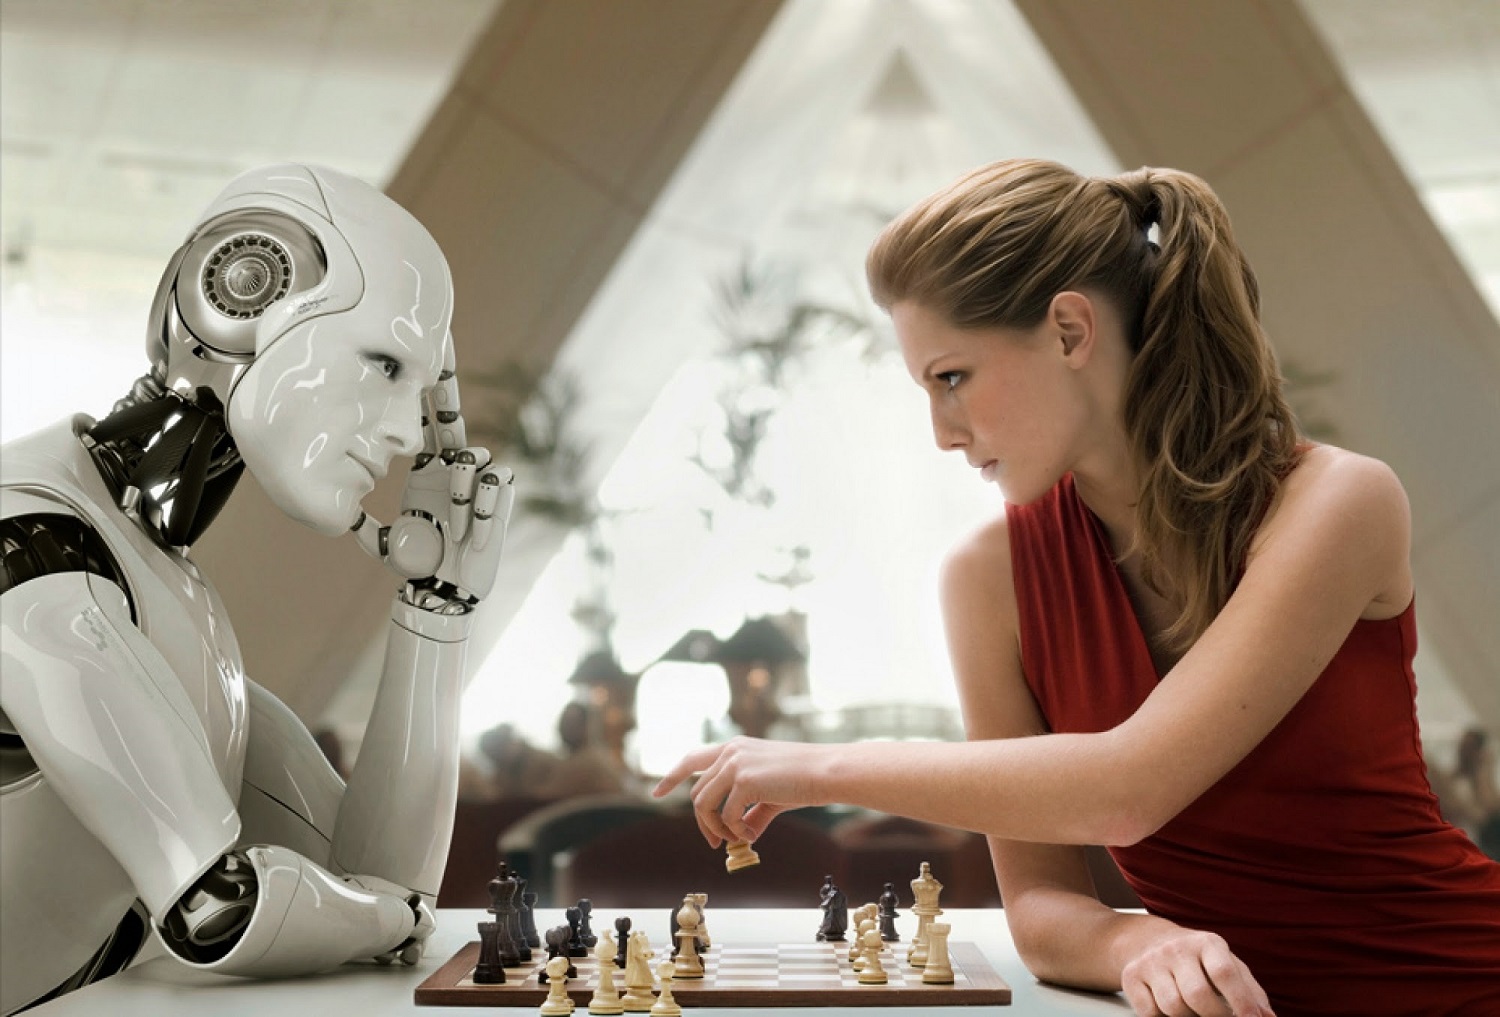 AI intelligenza artificiale: è questo il mondo che vogliamo?